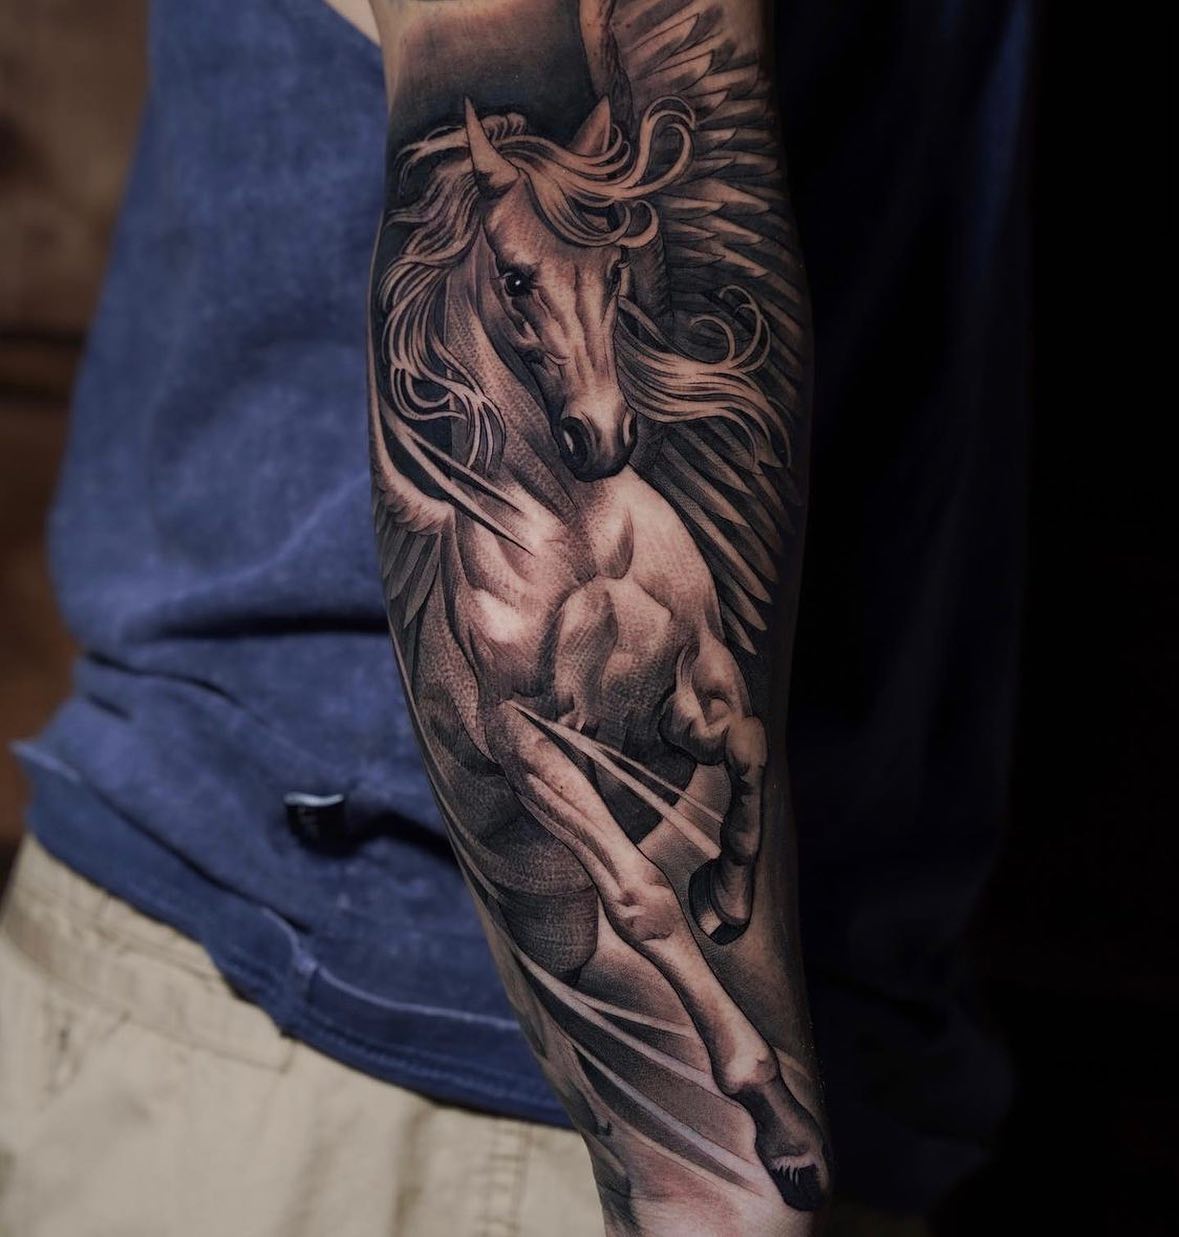 Tatuaje realista de un caballo en el brazo